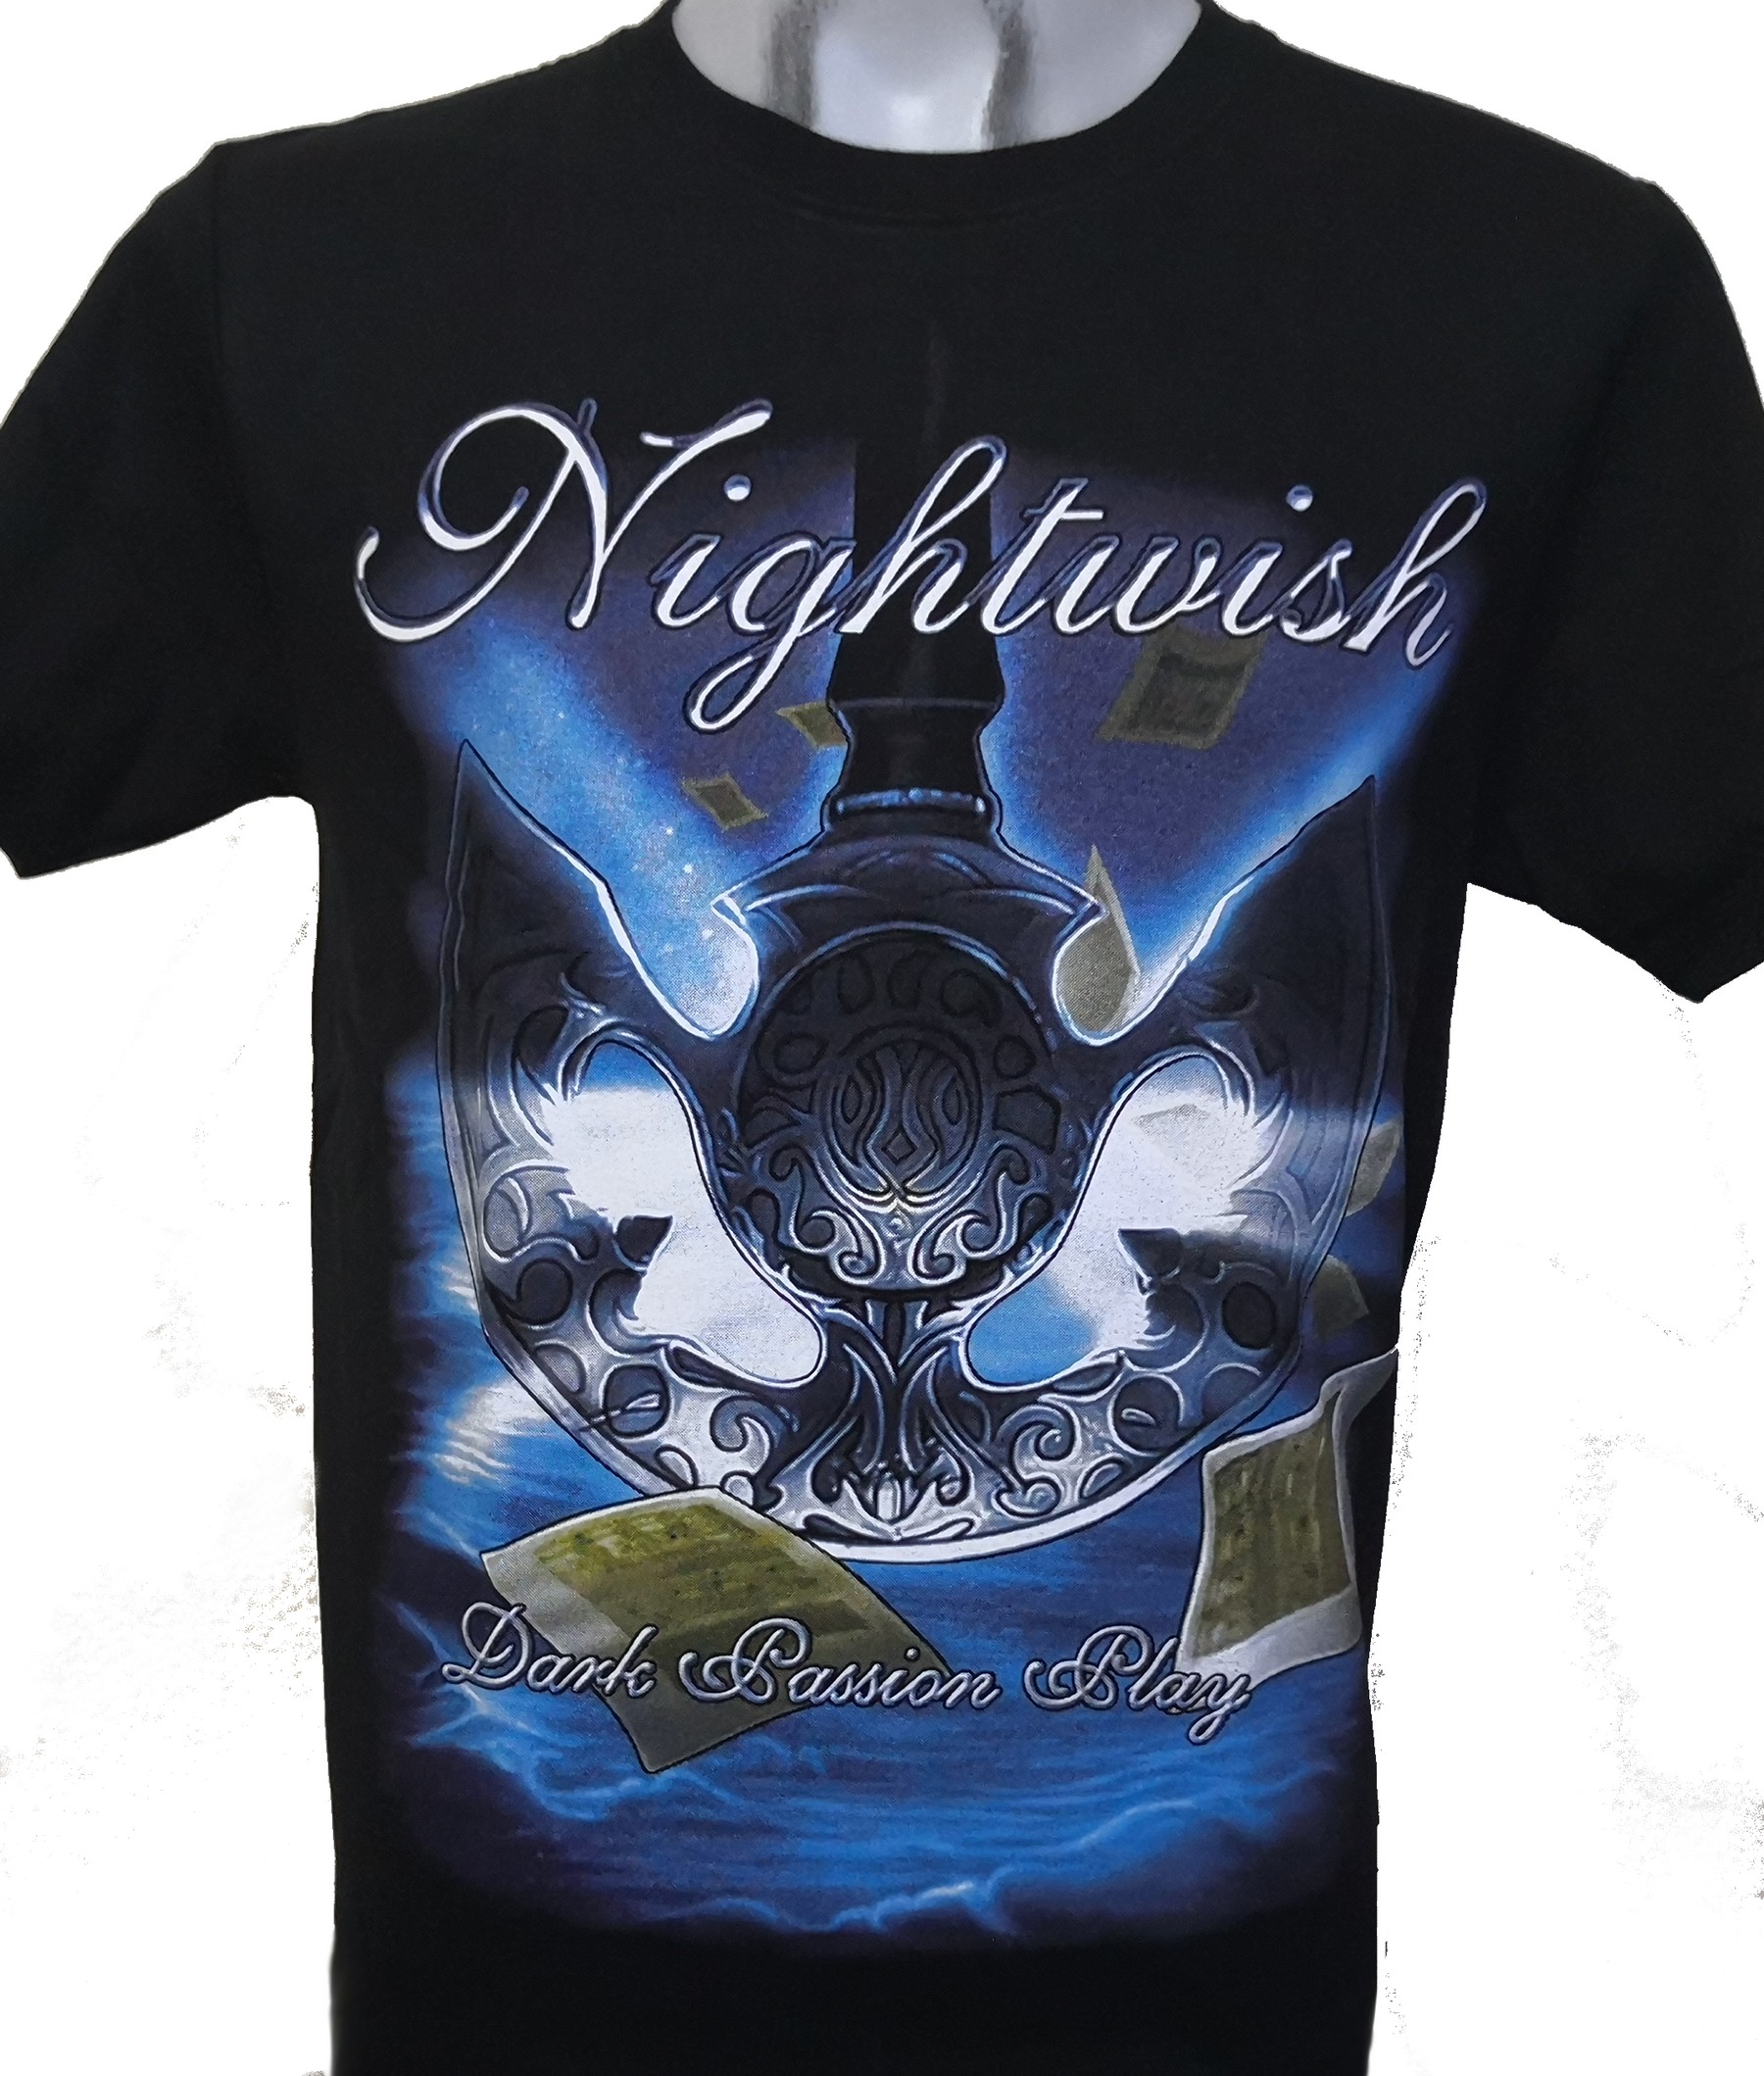 Rond en rond Ophef viel Nightwish t-shirt Dark Passion Play size L – RoxxBKK